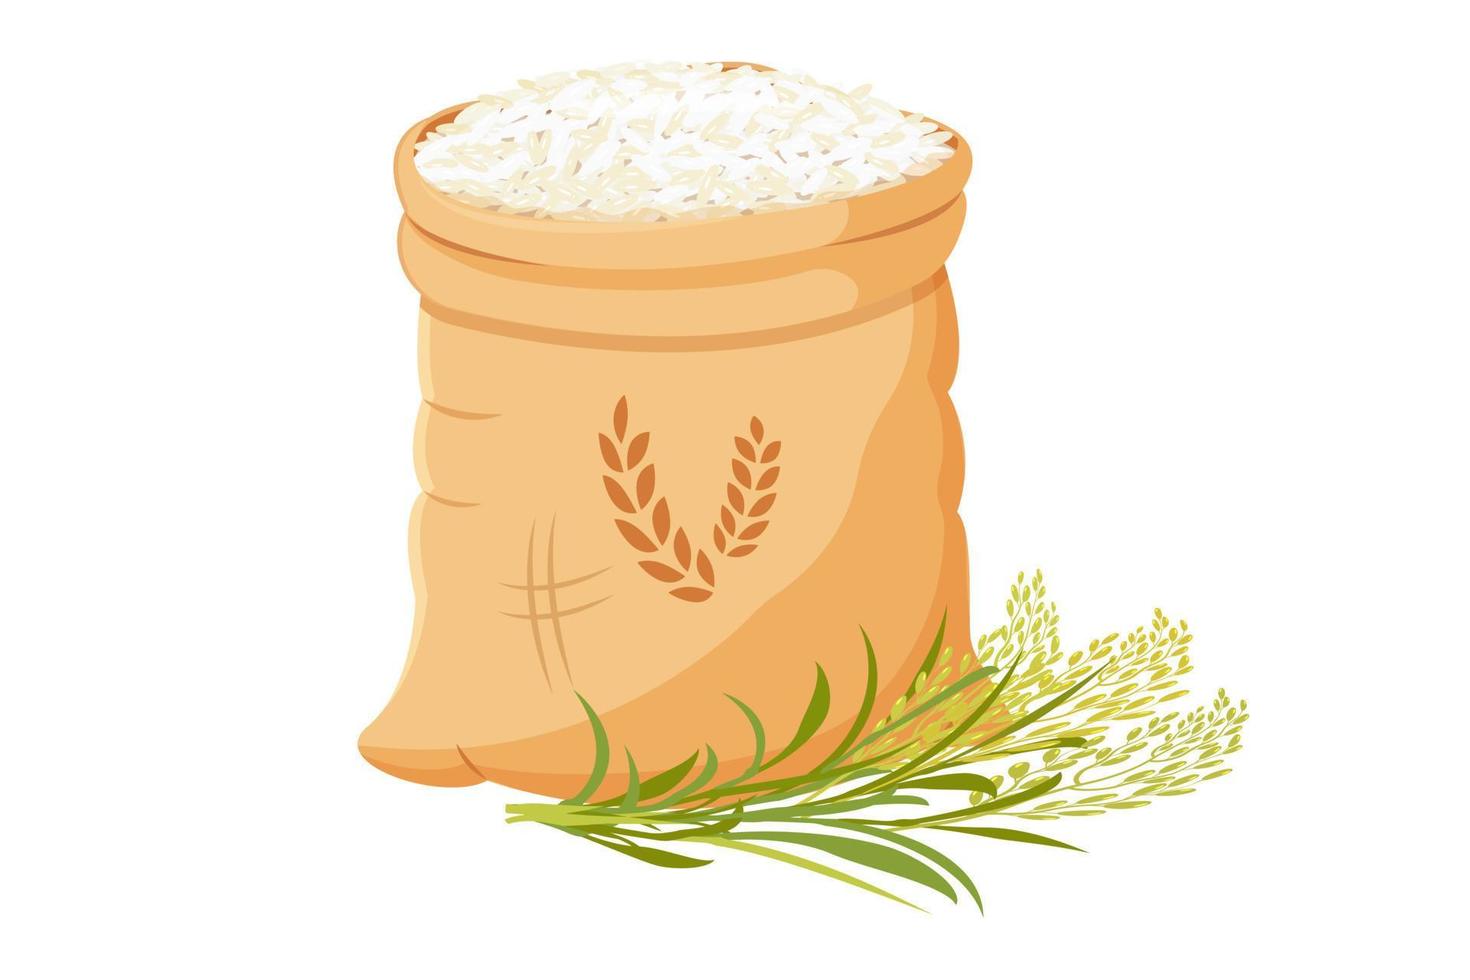 väska av ris med knippa av öron. vektor illustration av spannmål skörda med växt stjälkar.